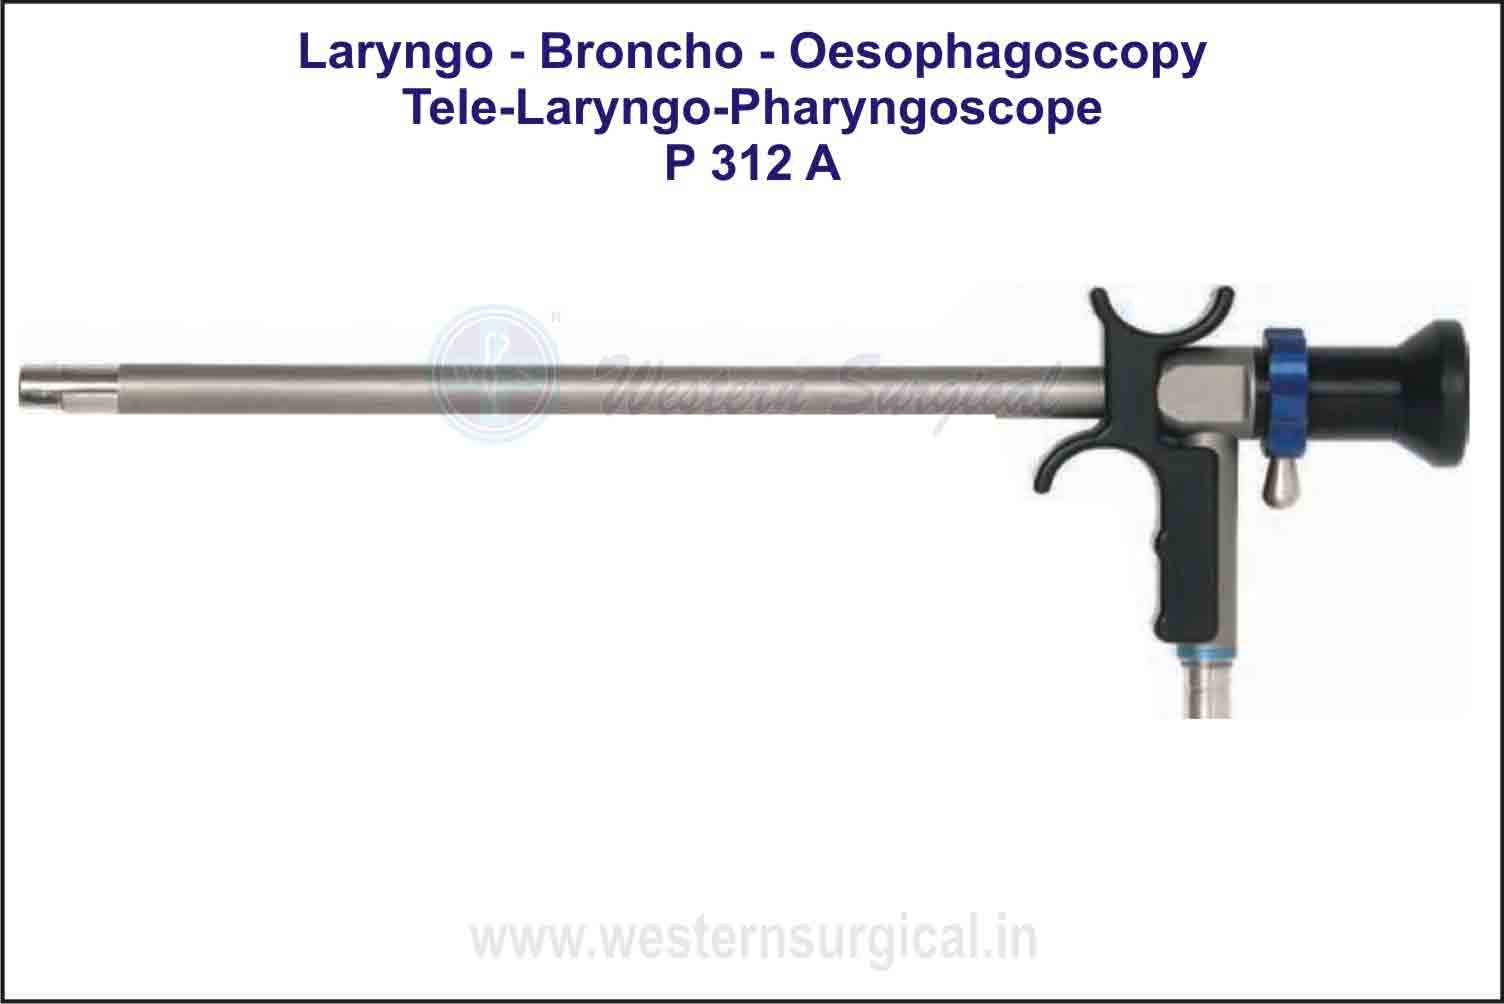 Tele-Laryngo-Pharyngoscope